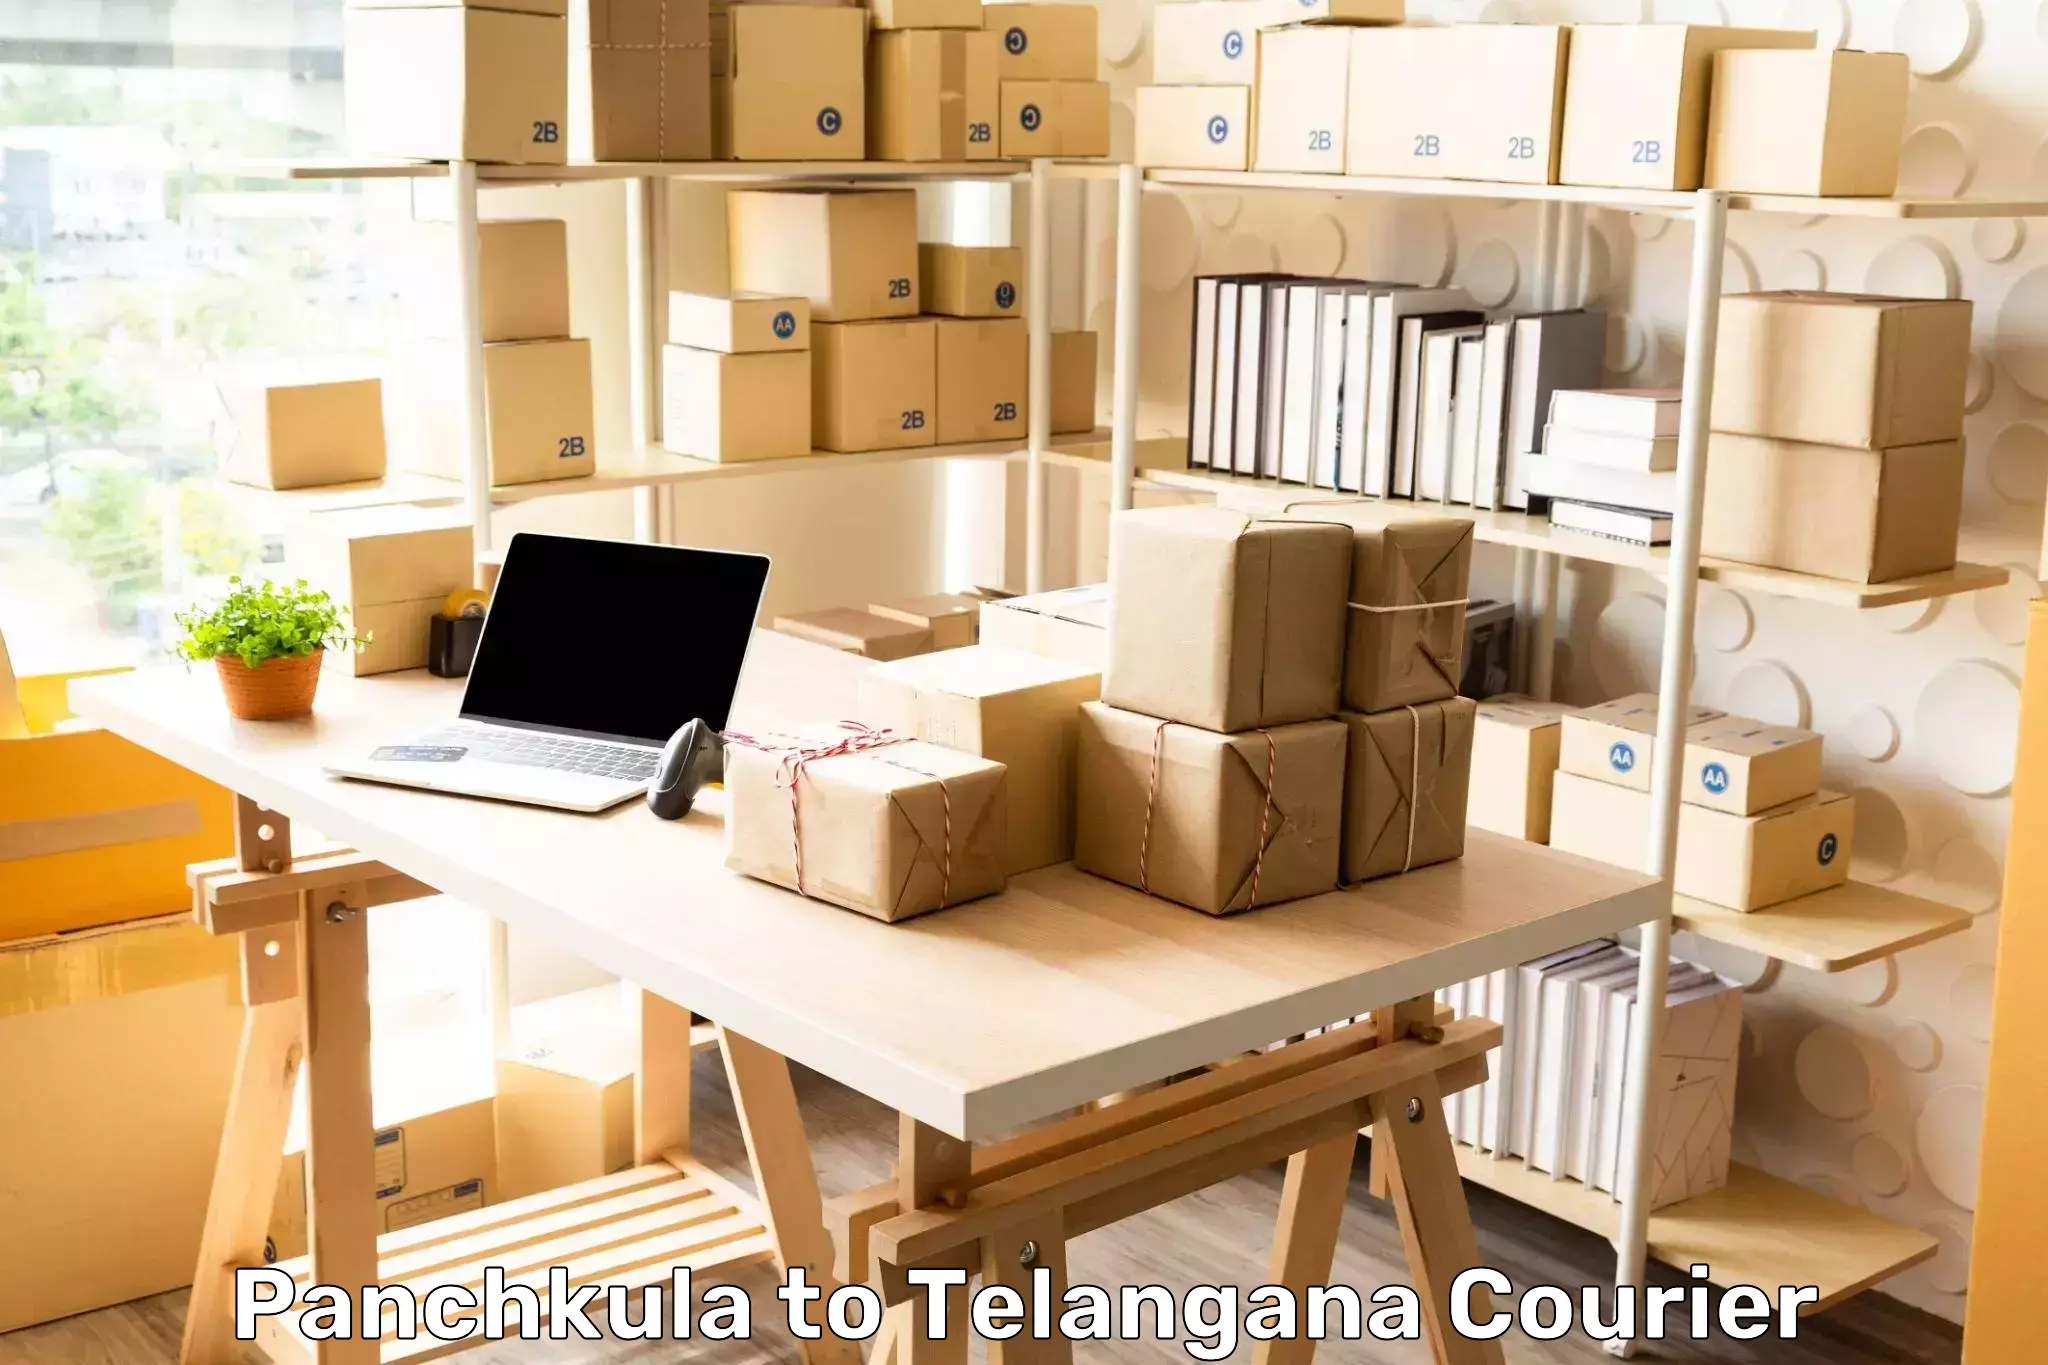 Package tracking Panchkula to Adilabad